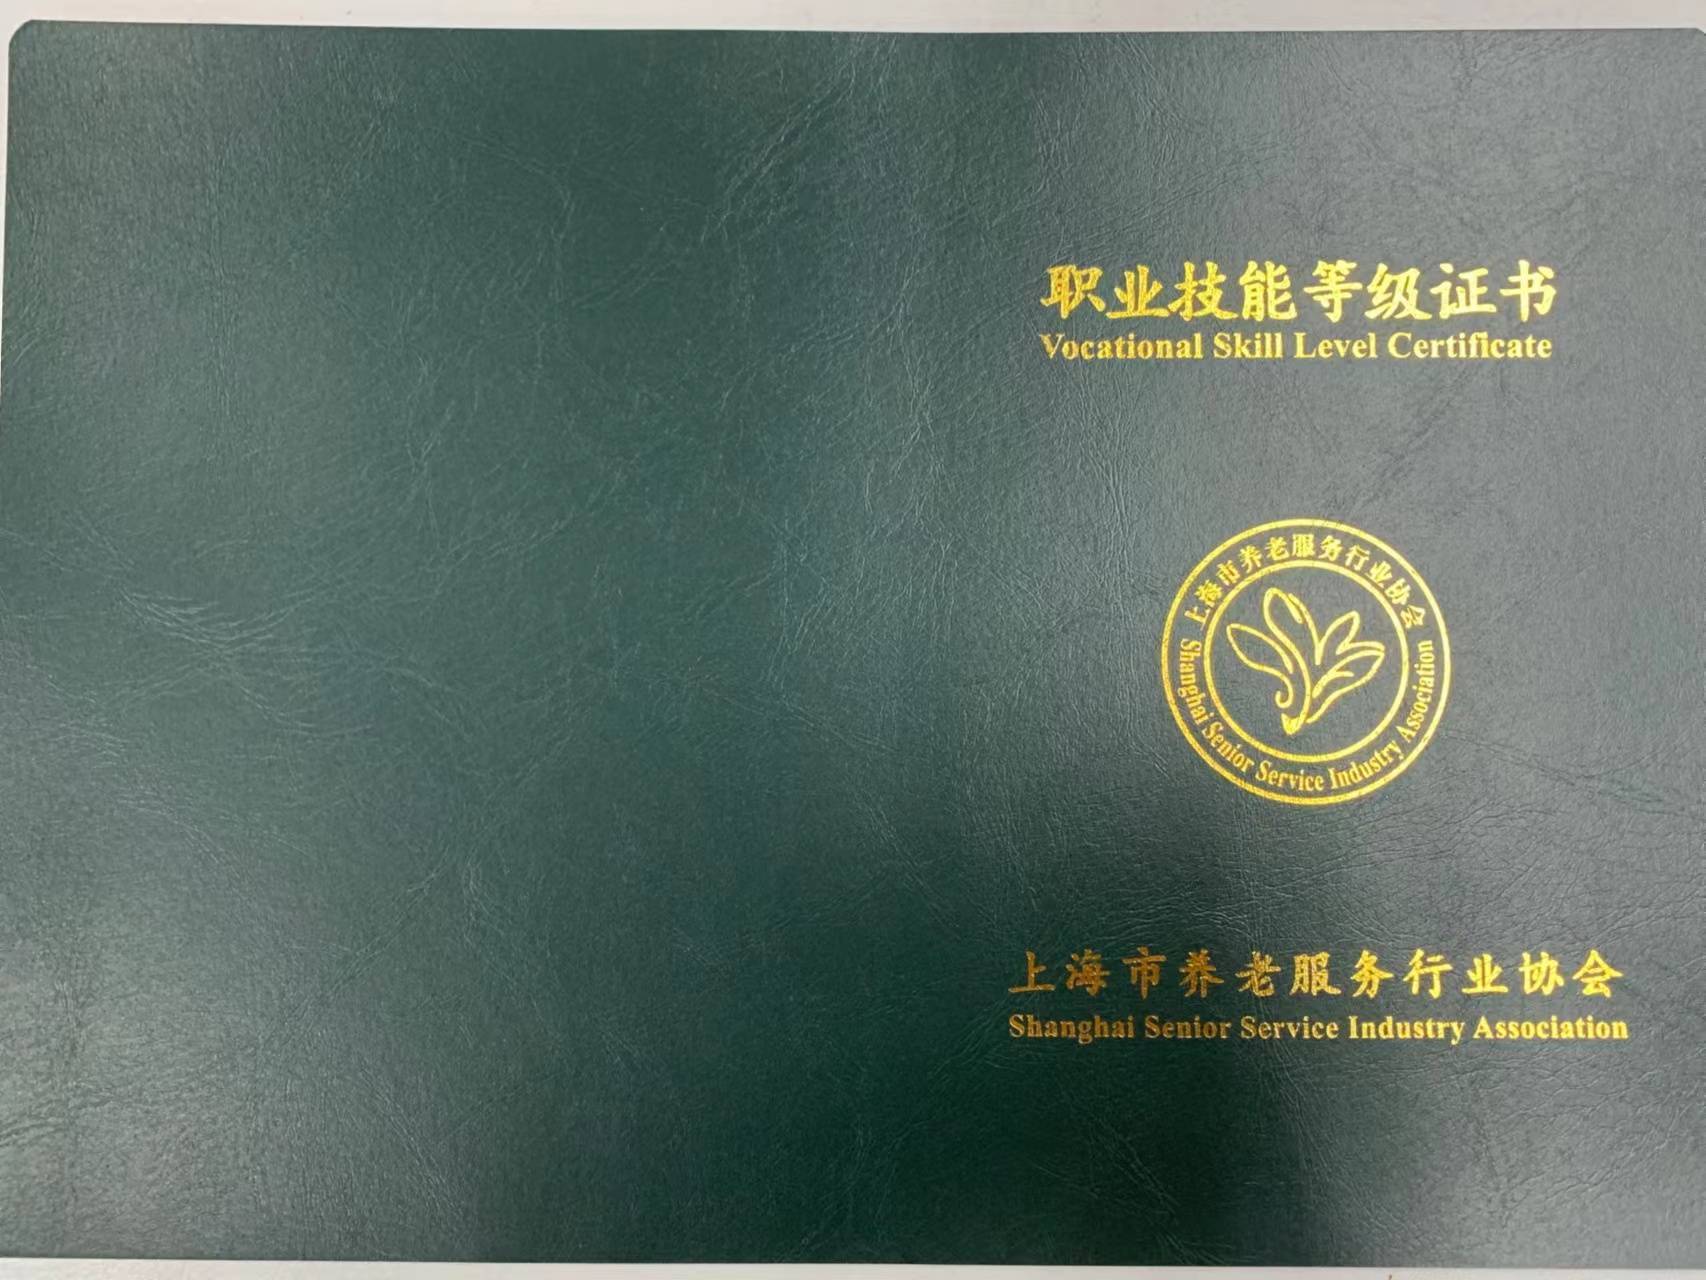 【证书样式】:【上海养老护理员培训】上海养老护理员培训学校 